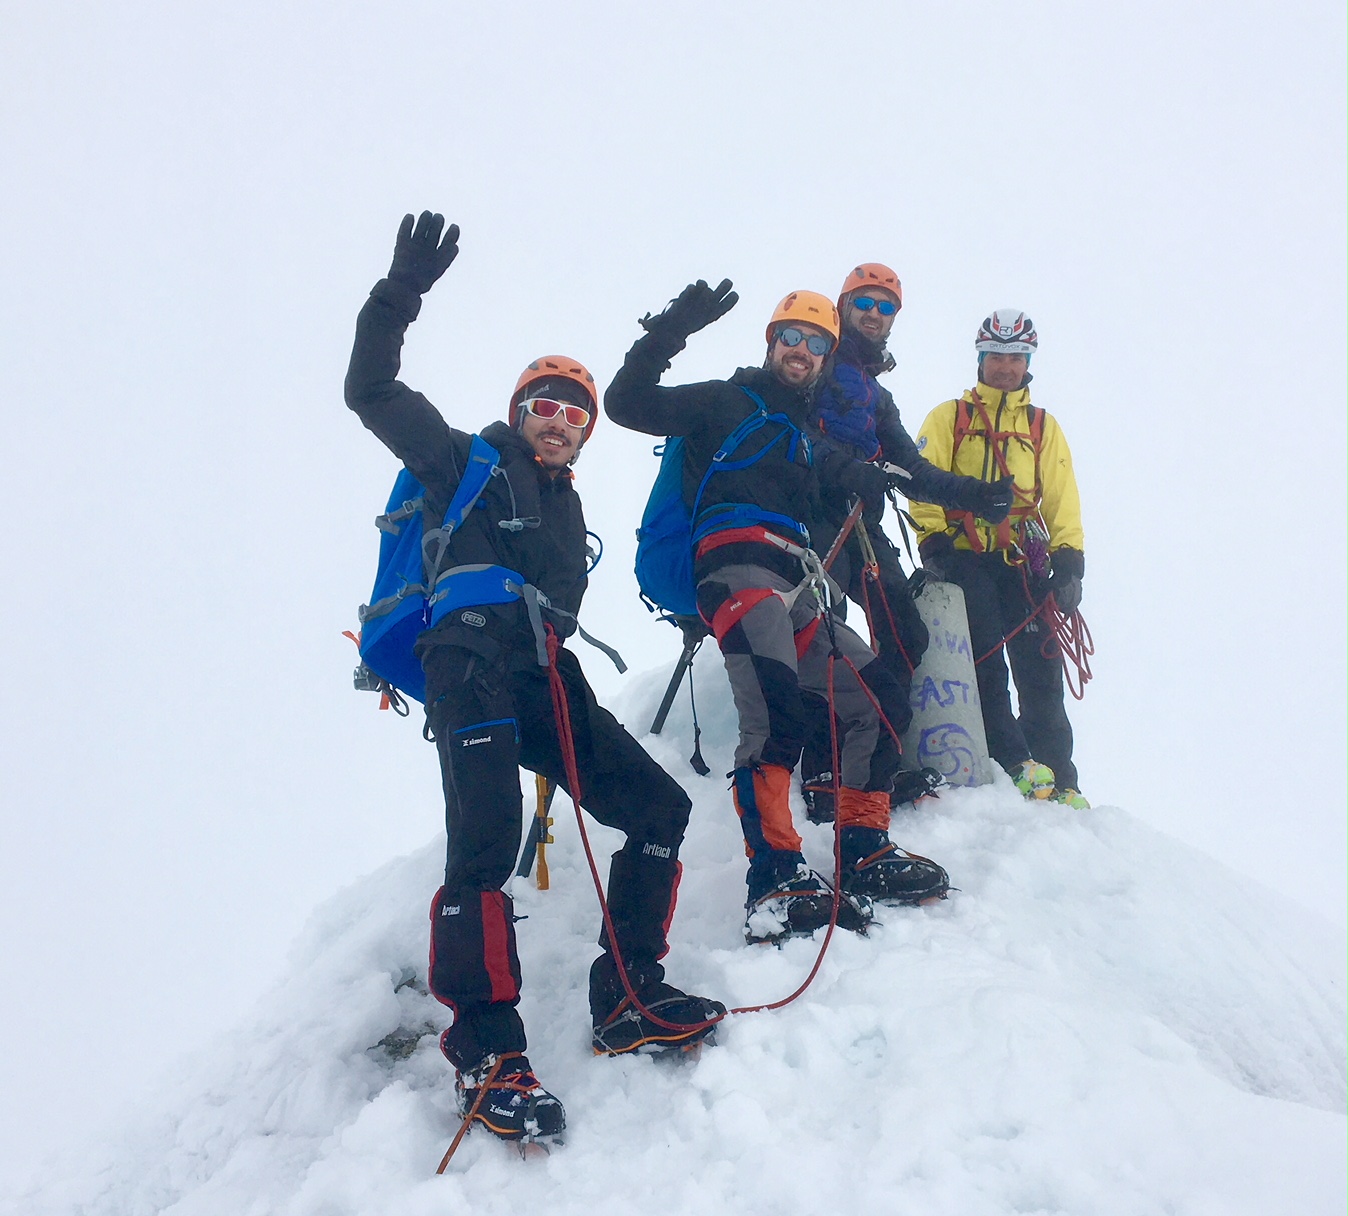 1 to 7 August 2020: Trekking no Pireneu com subidas ao Pico Perdigueiro 3221m e pico Posets 3375m